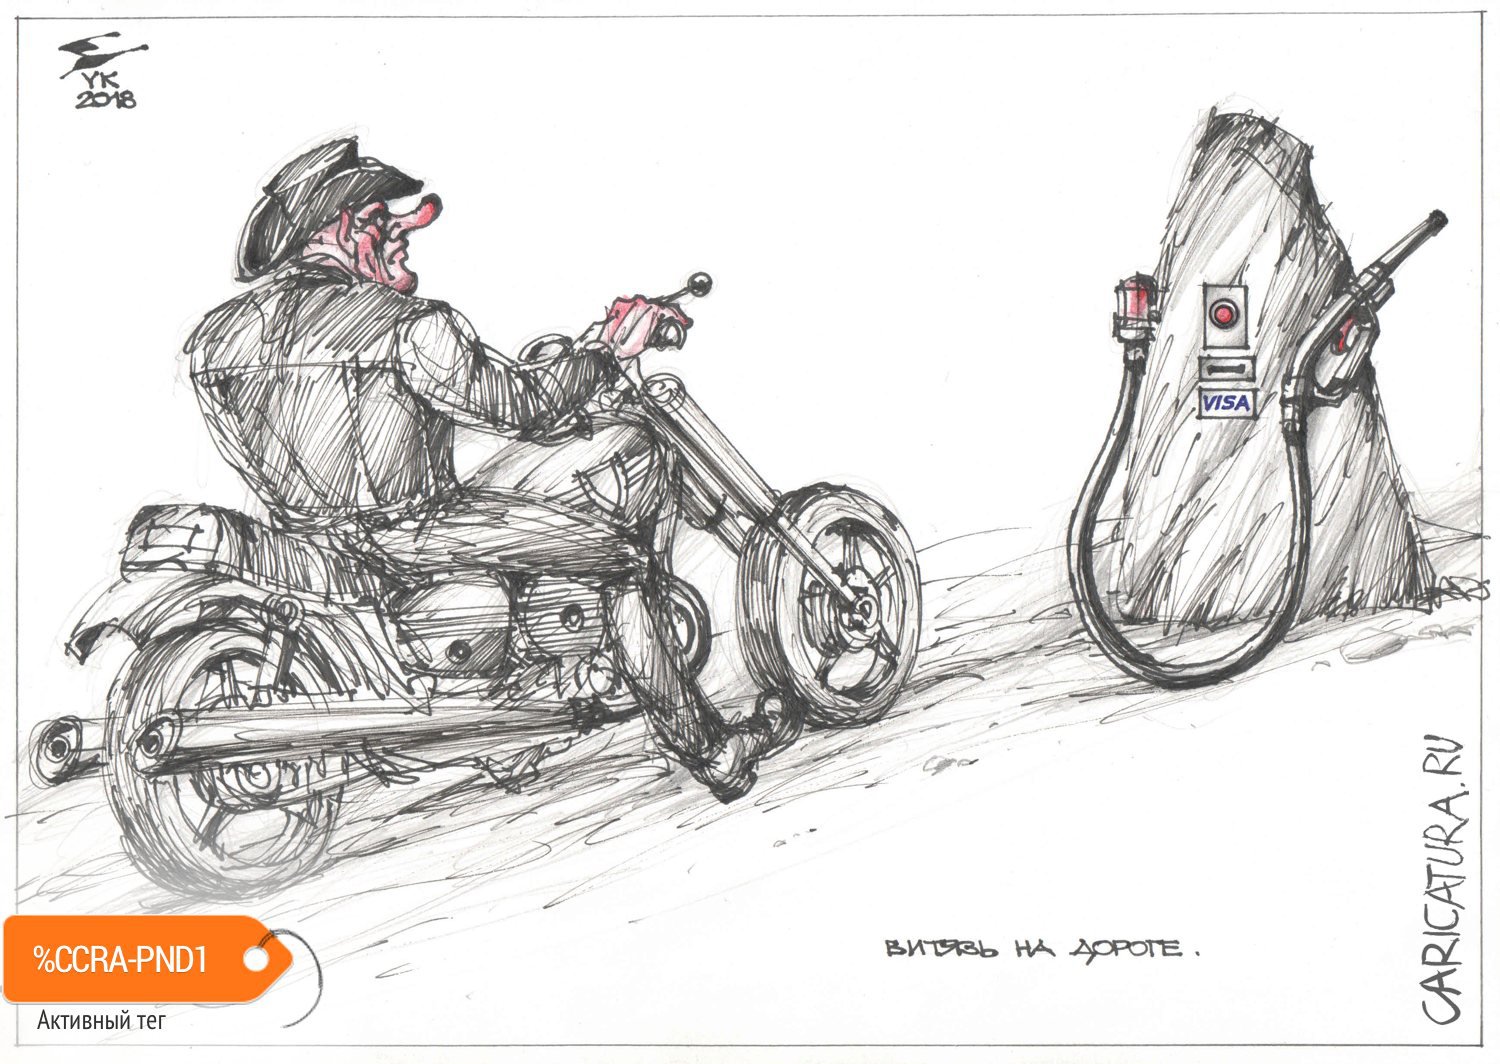 Карикатура "Витязь на дороге", Юрий Косарев